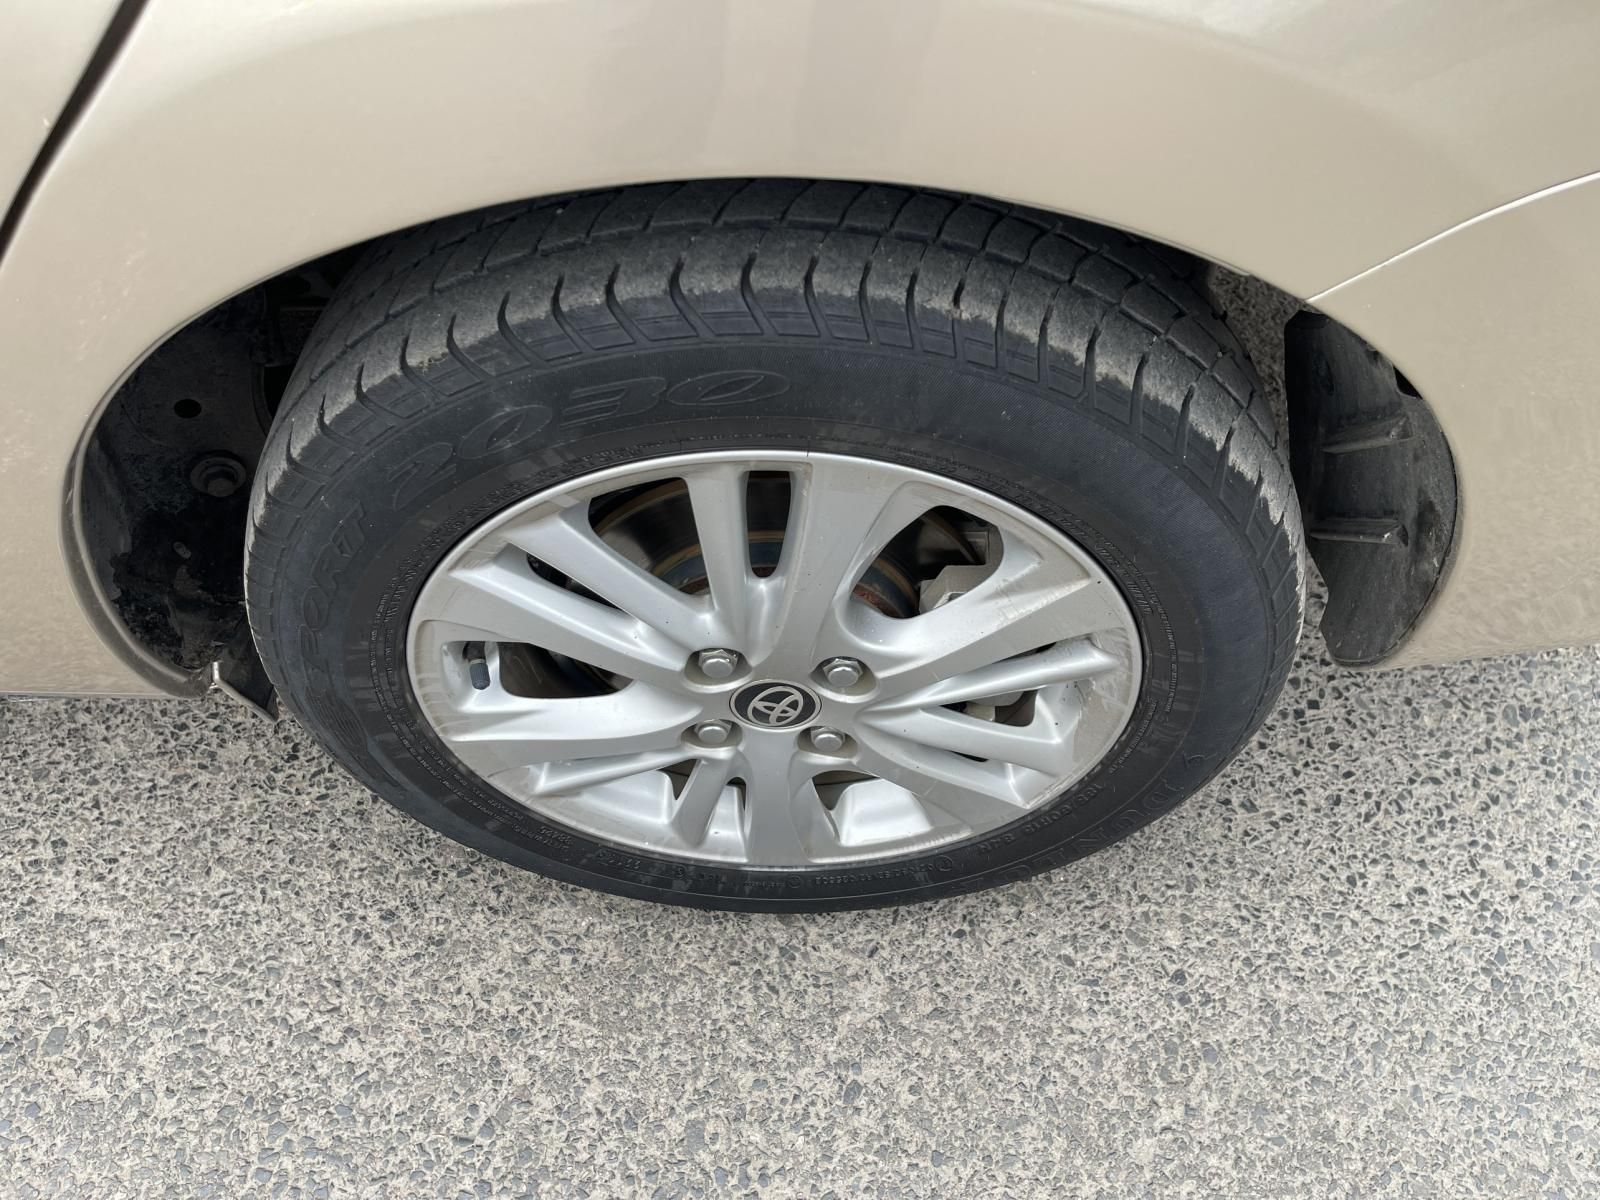 Toyota Vios 2019 - 1 chủ mới đi được đúng 3v km, nguyên bản 100%. Xe như mới tinh